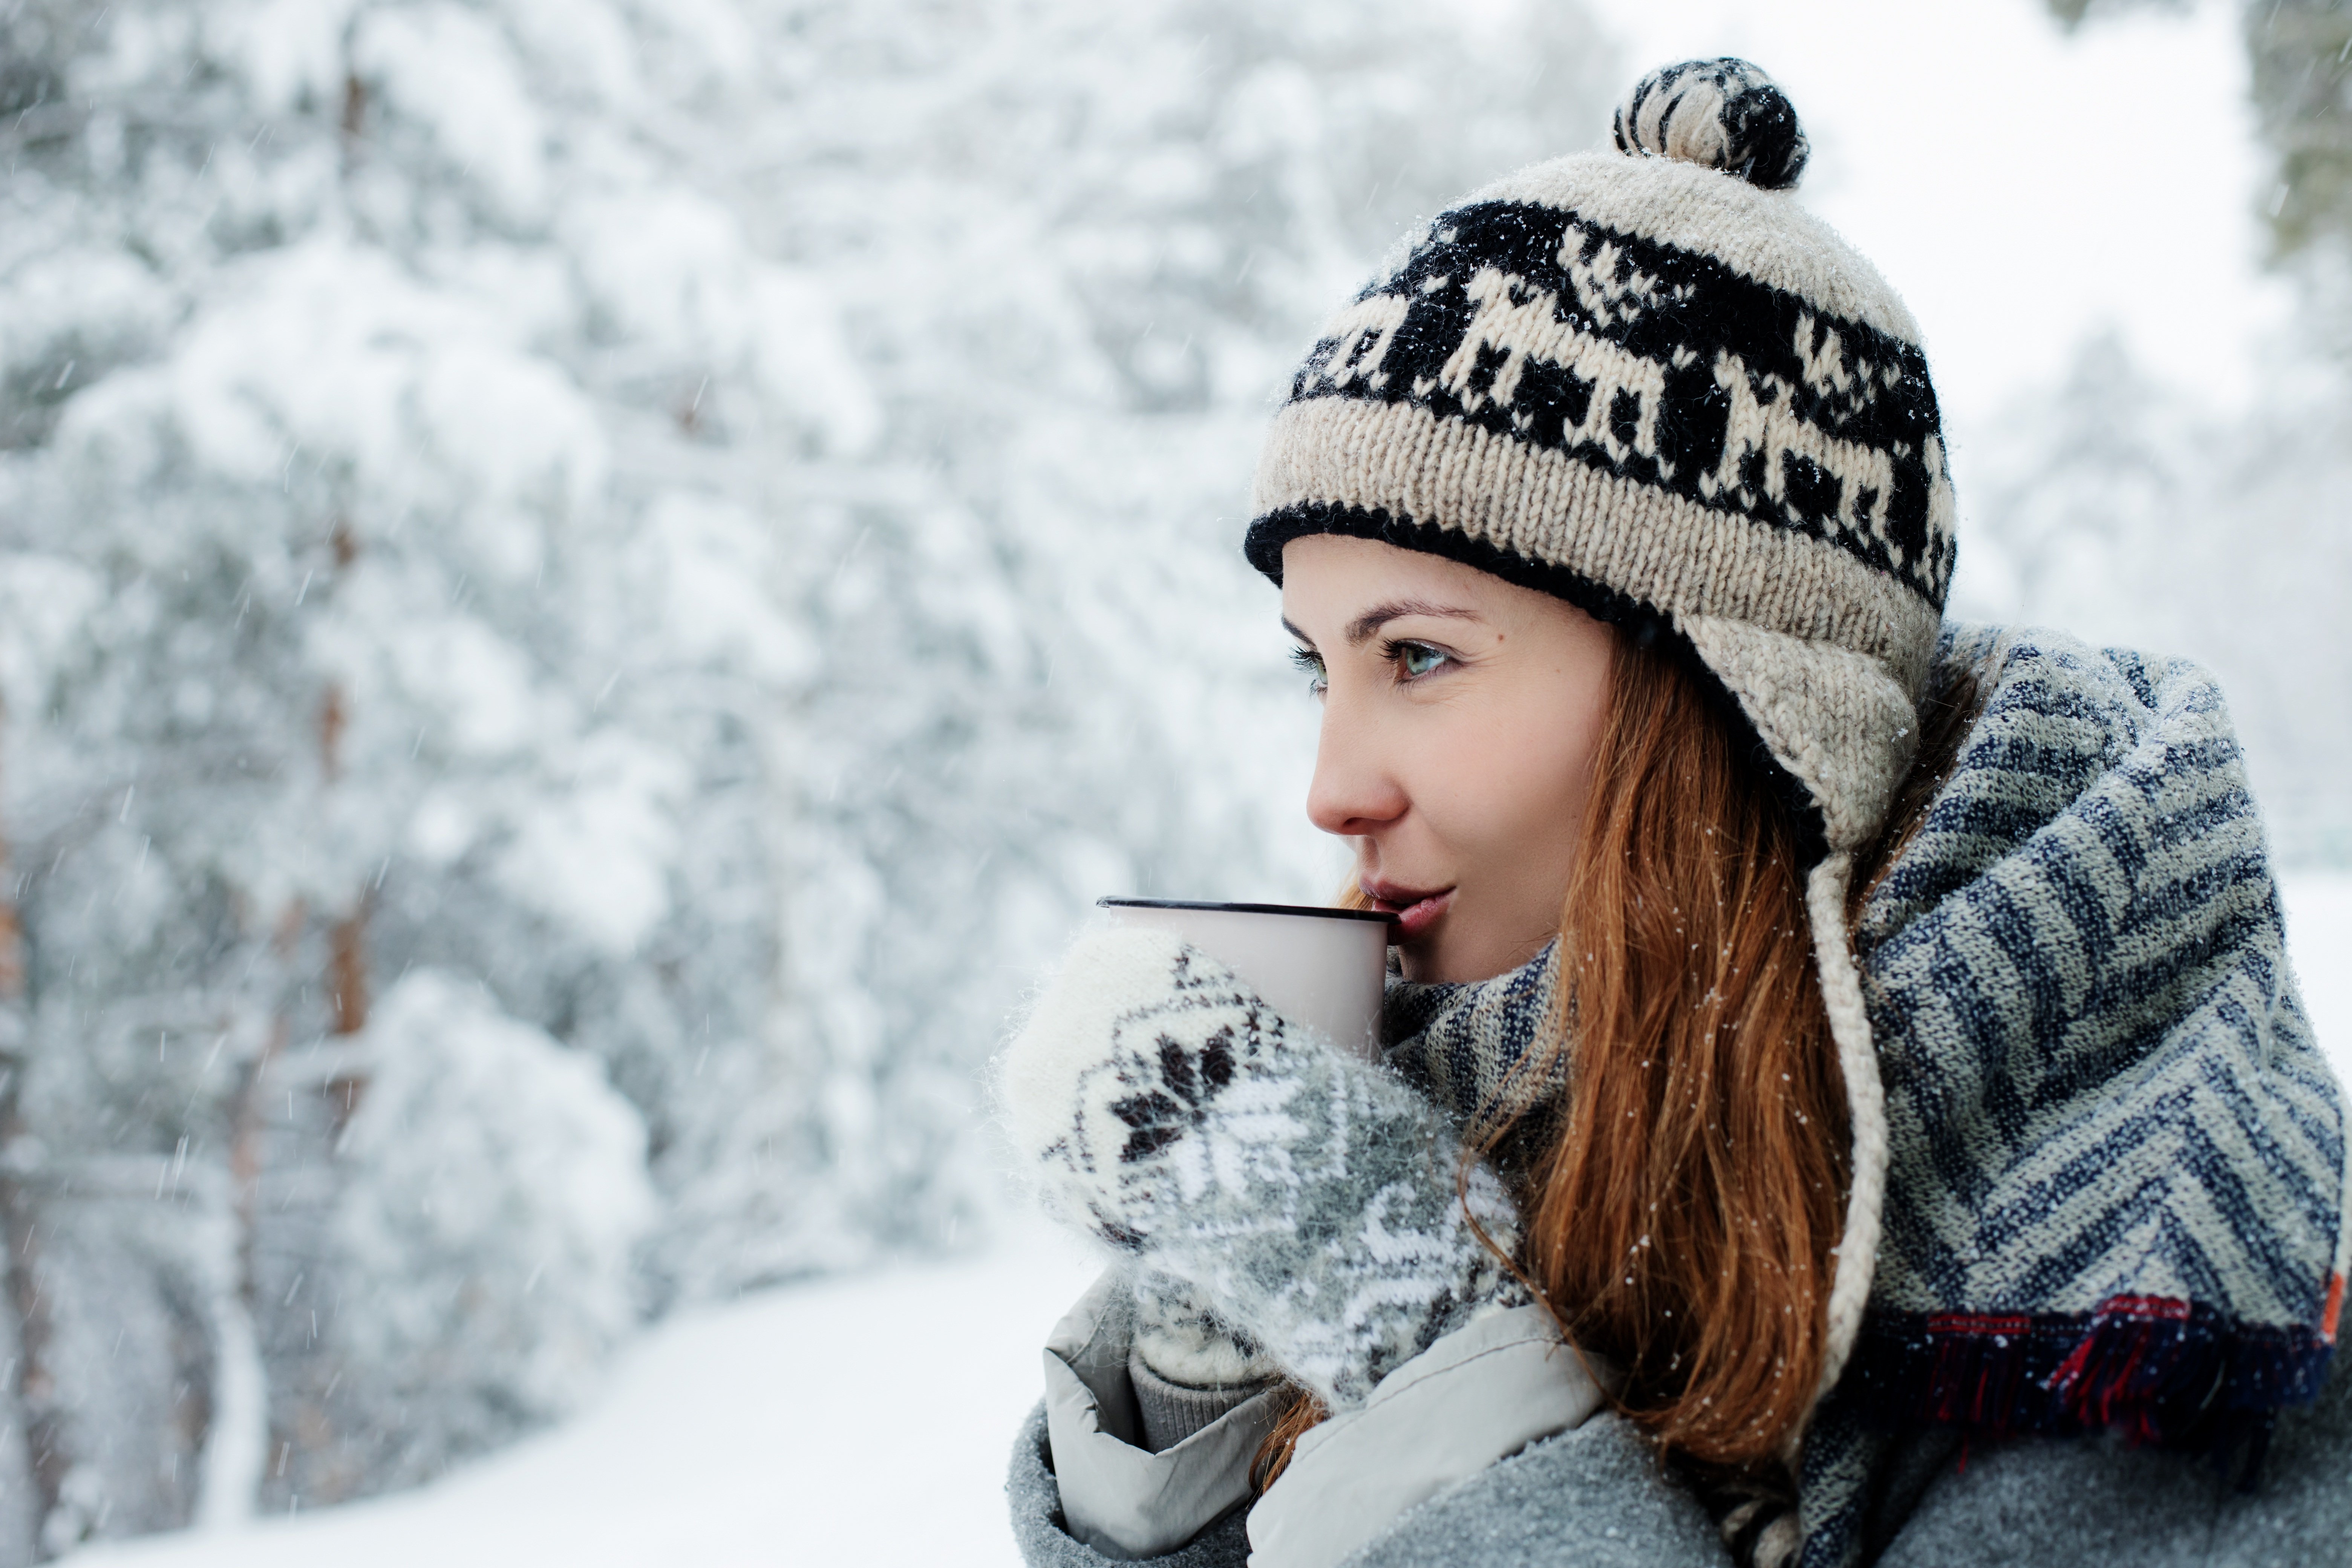 Сколько живет зима. Зимняя фотосессия в лесу. Девушка в шапке. Девушка пьет чай зимой. Девушка зима.